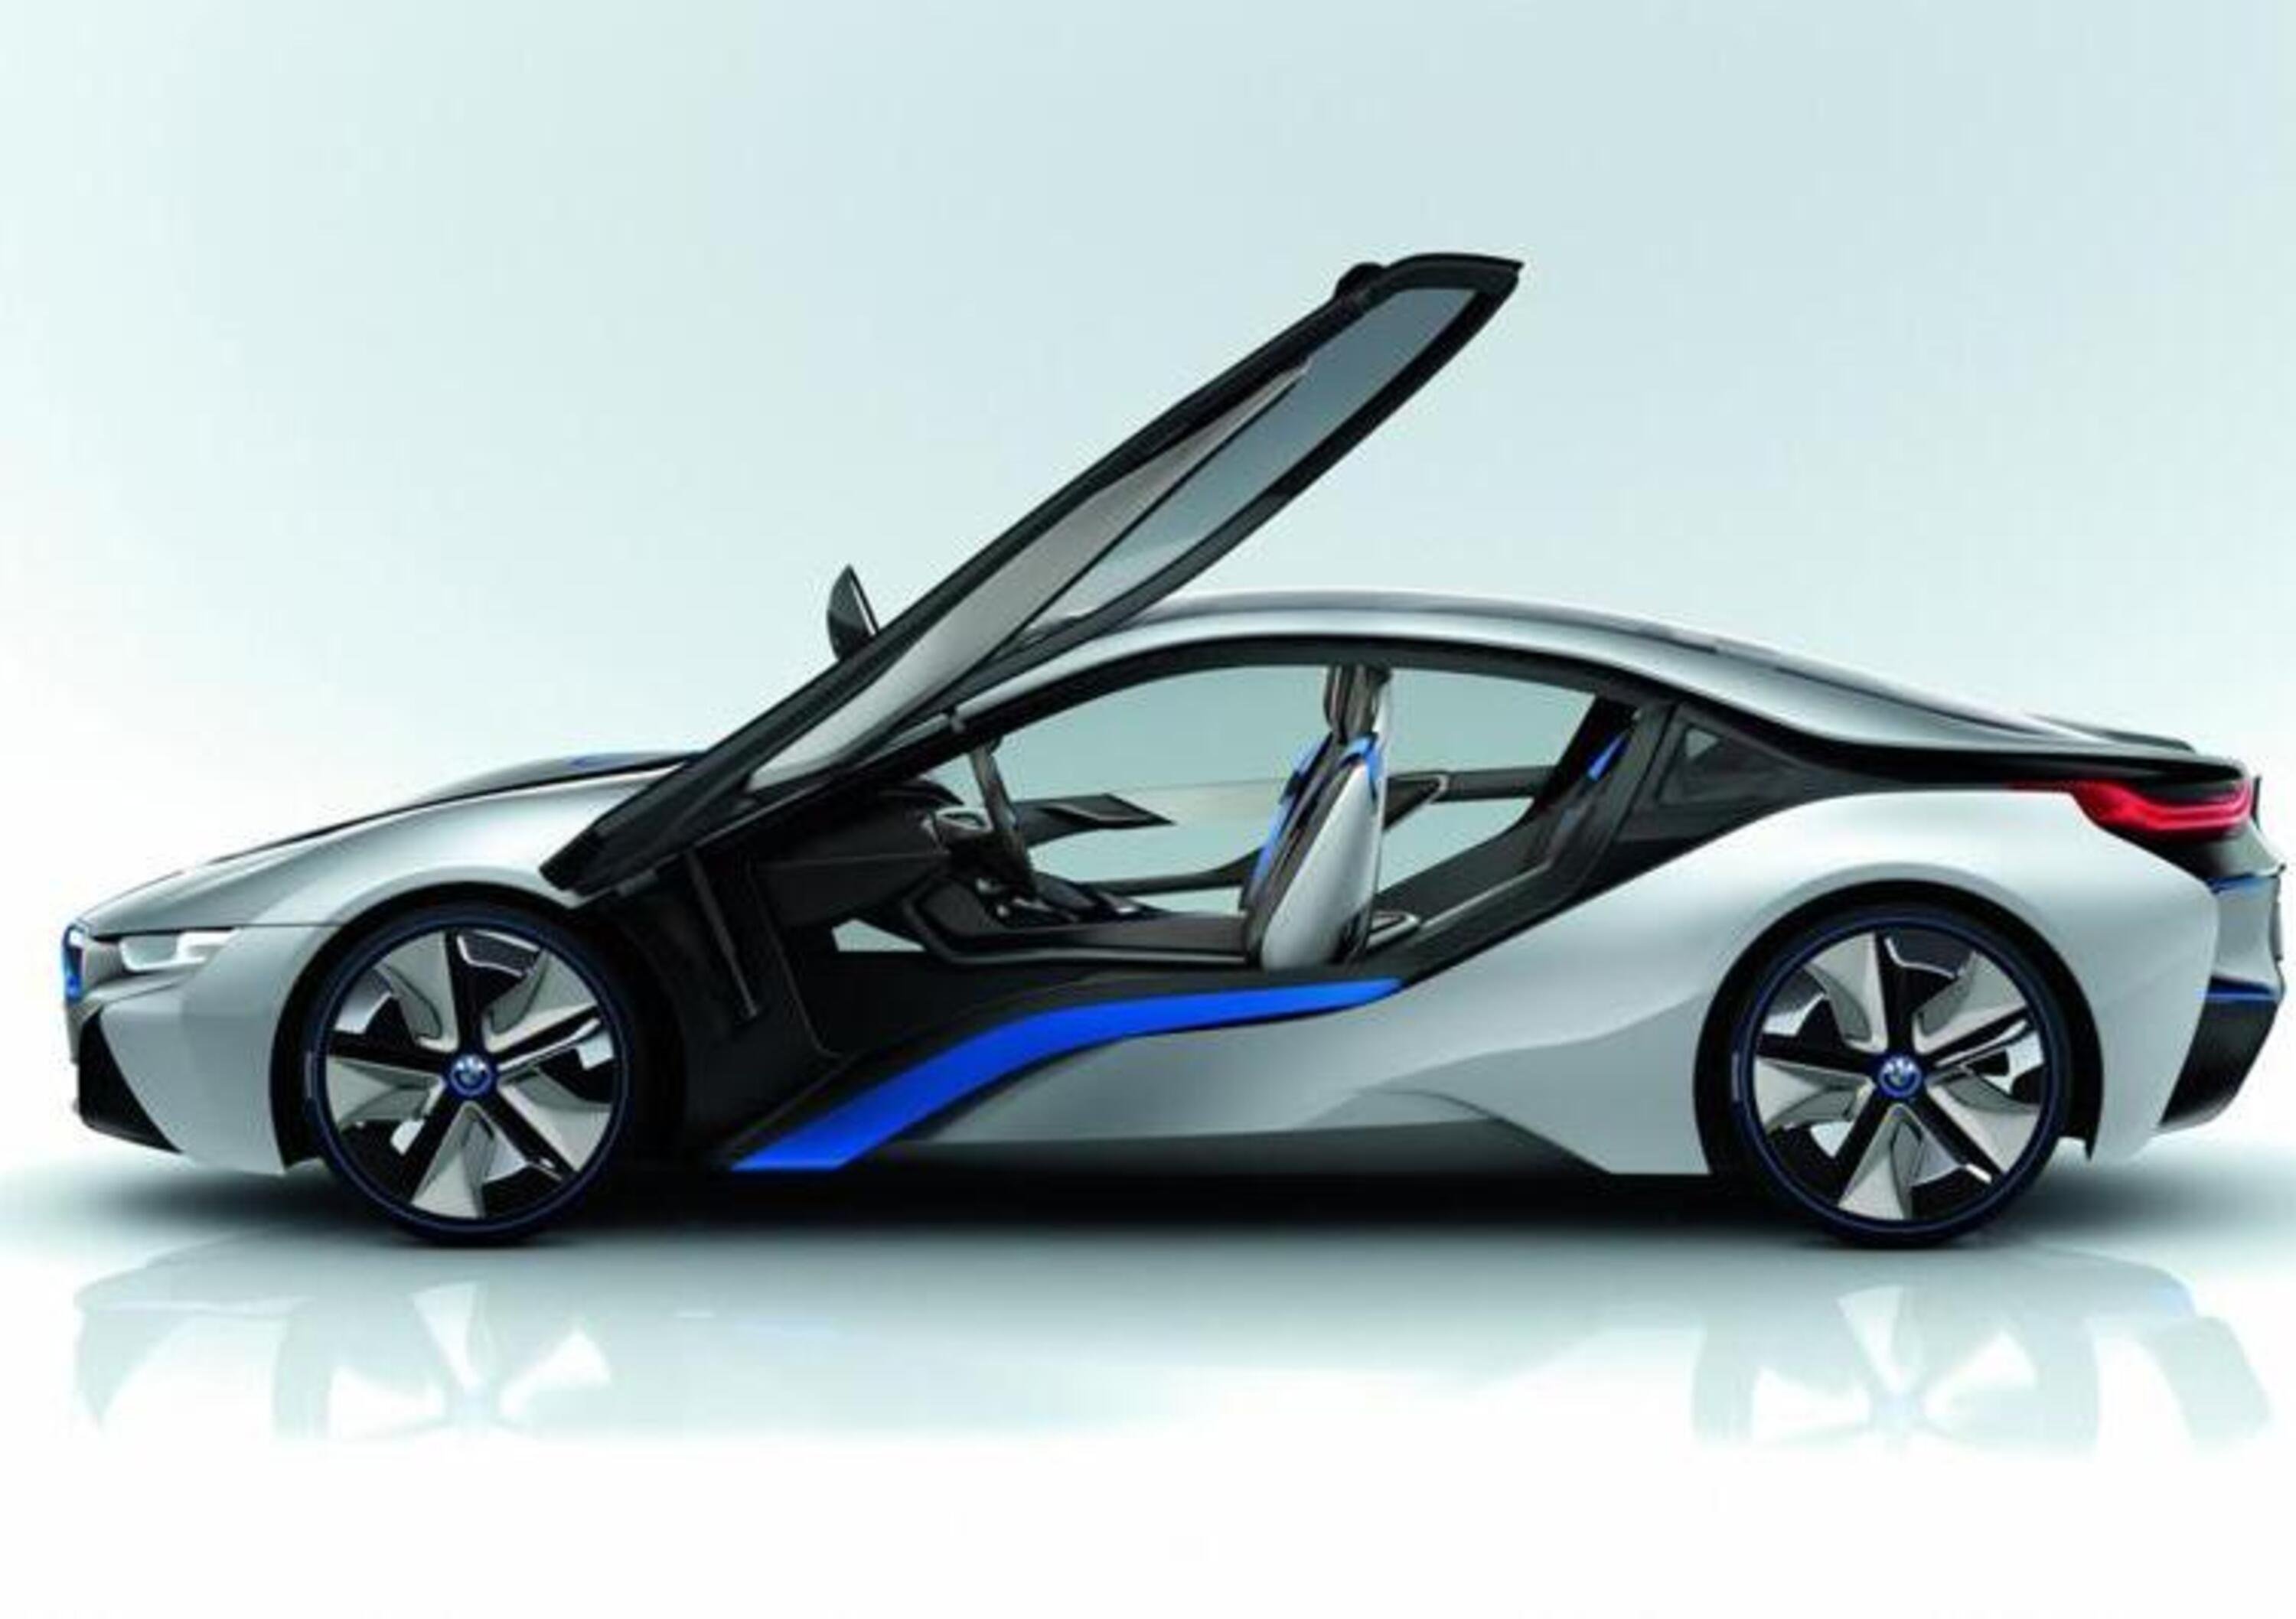 BMW i8 Concept: in concessionaria nel 2014